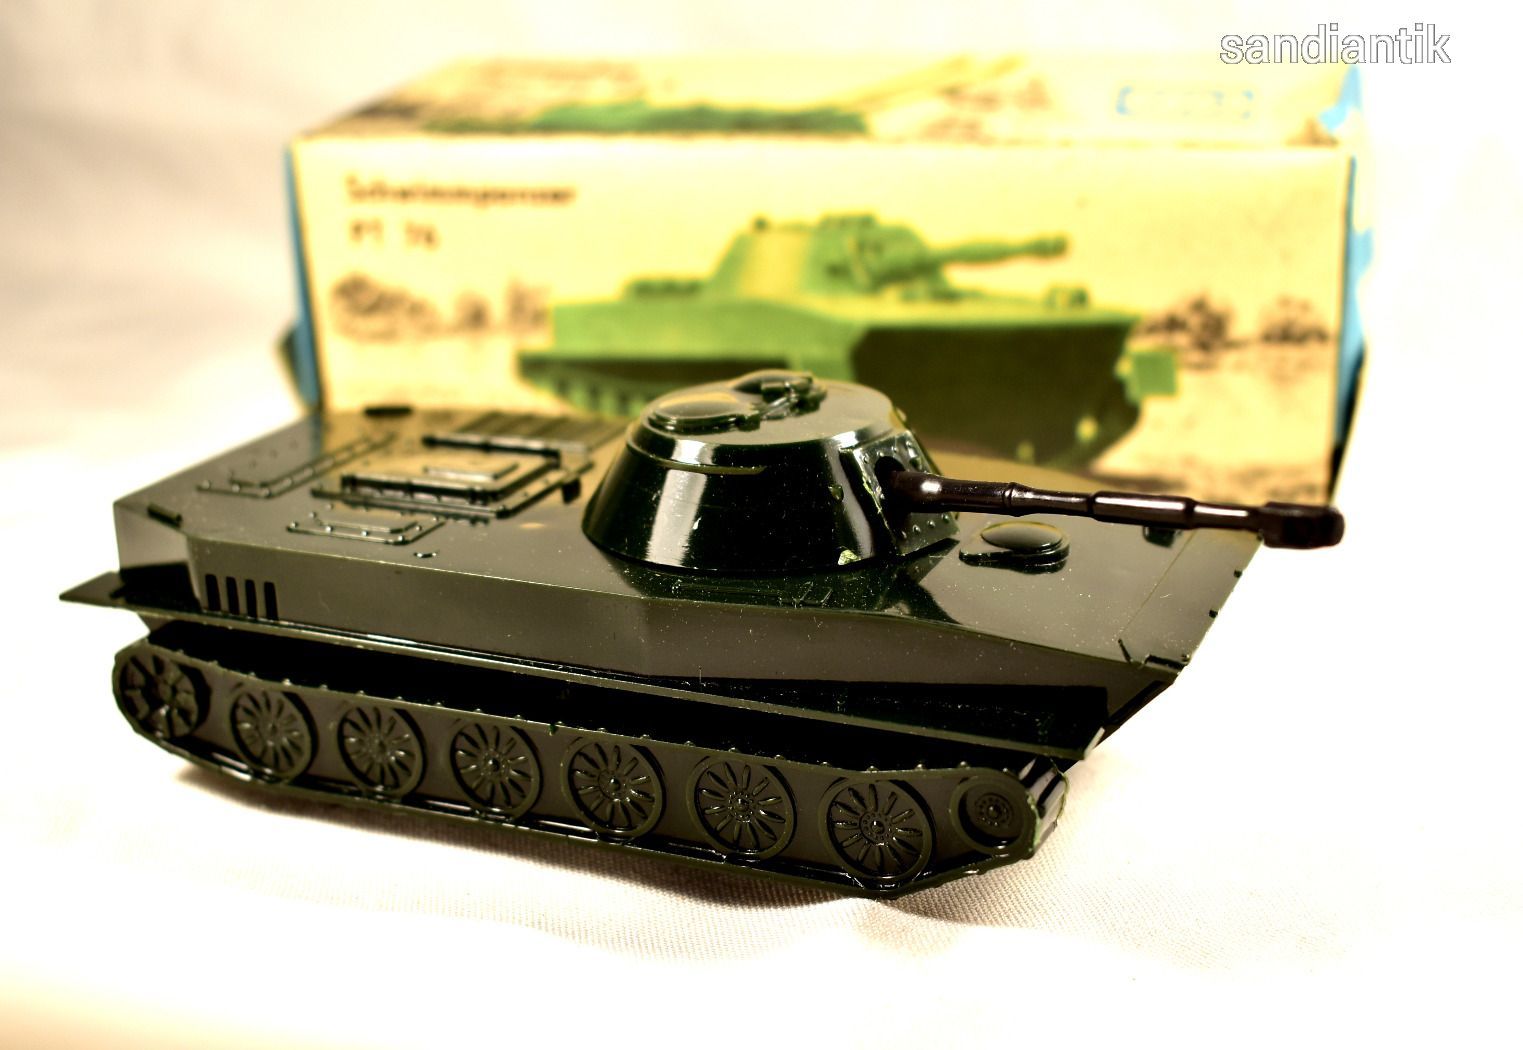 kelet-nemet-retro-lendkerekes-tank-jatek-eredeti-dobozaban-schwimmpanzer-ritka-szep-allapotban-e0eb_1_big.jpg